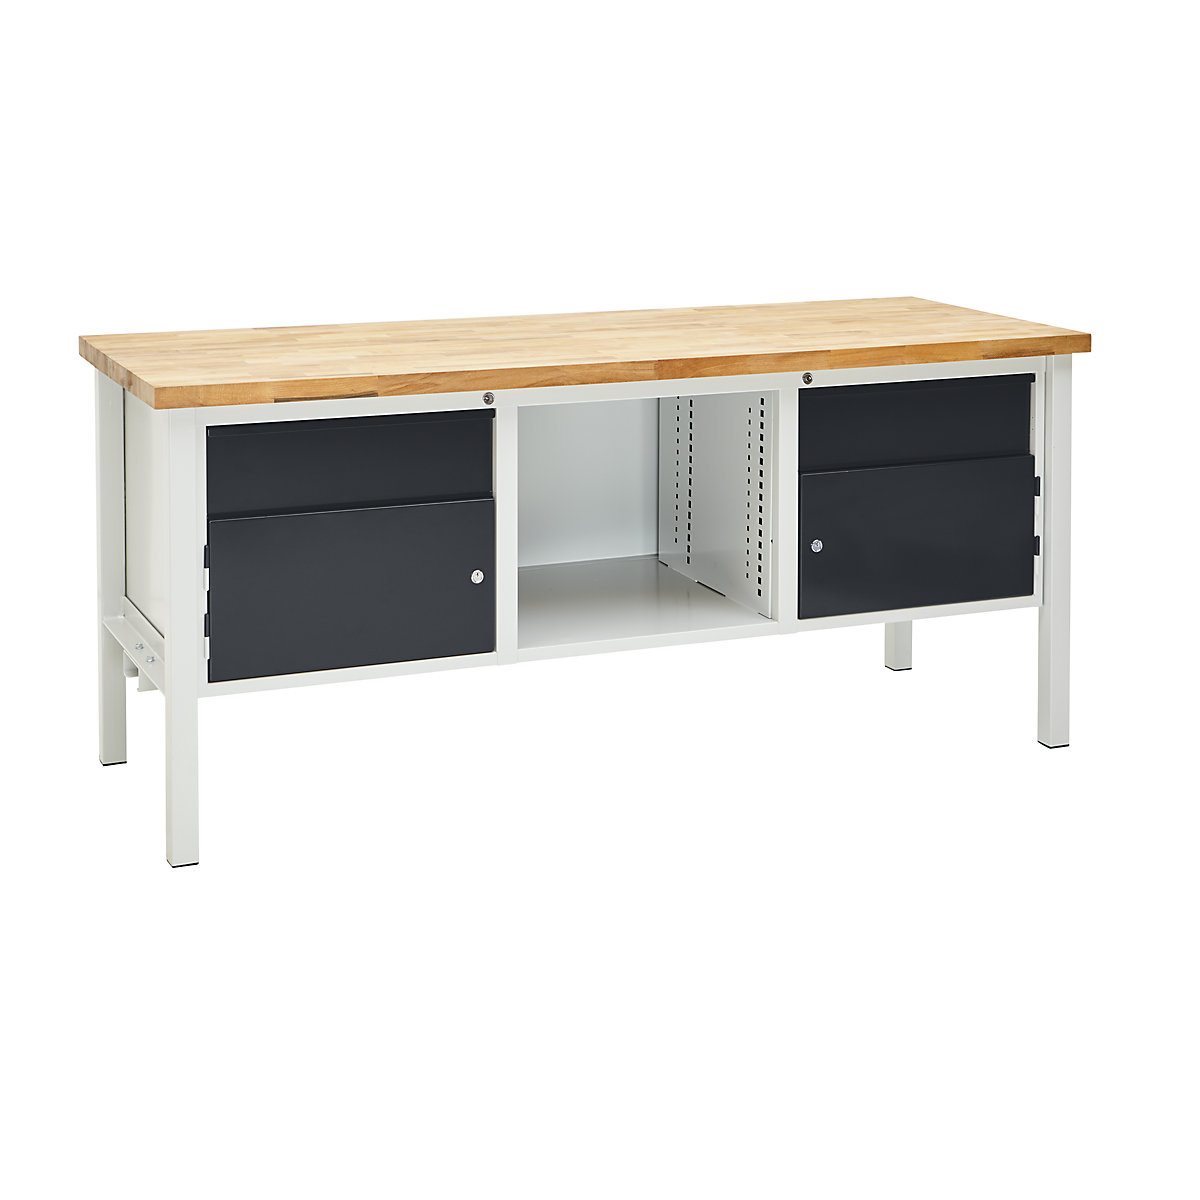 Dílenský stůl s rámovou konstrukcí, šířka 2000 mm, 2 zásuvky 175 mm, 2 dveře 300 mm, světlá šedá/antracitová šedá-1